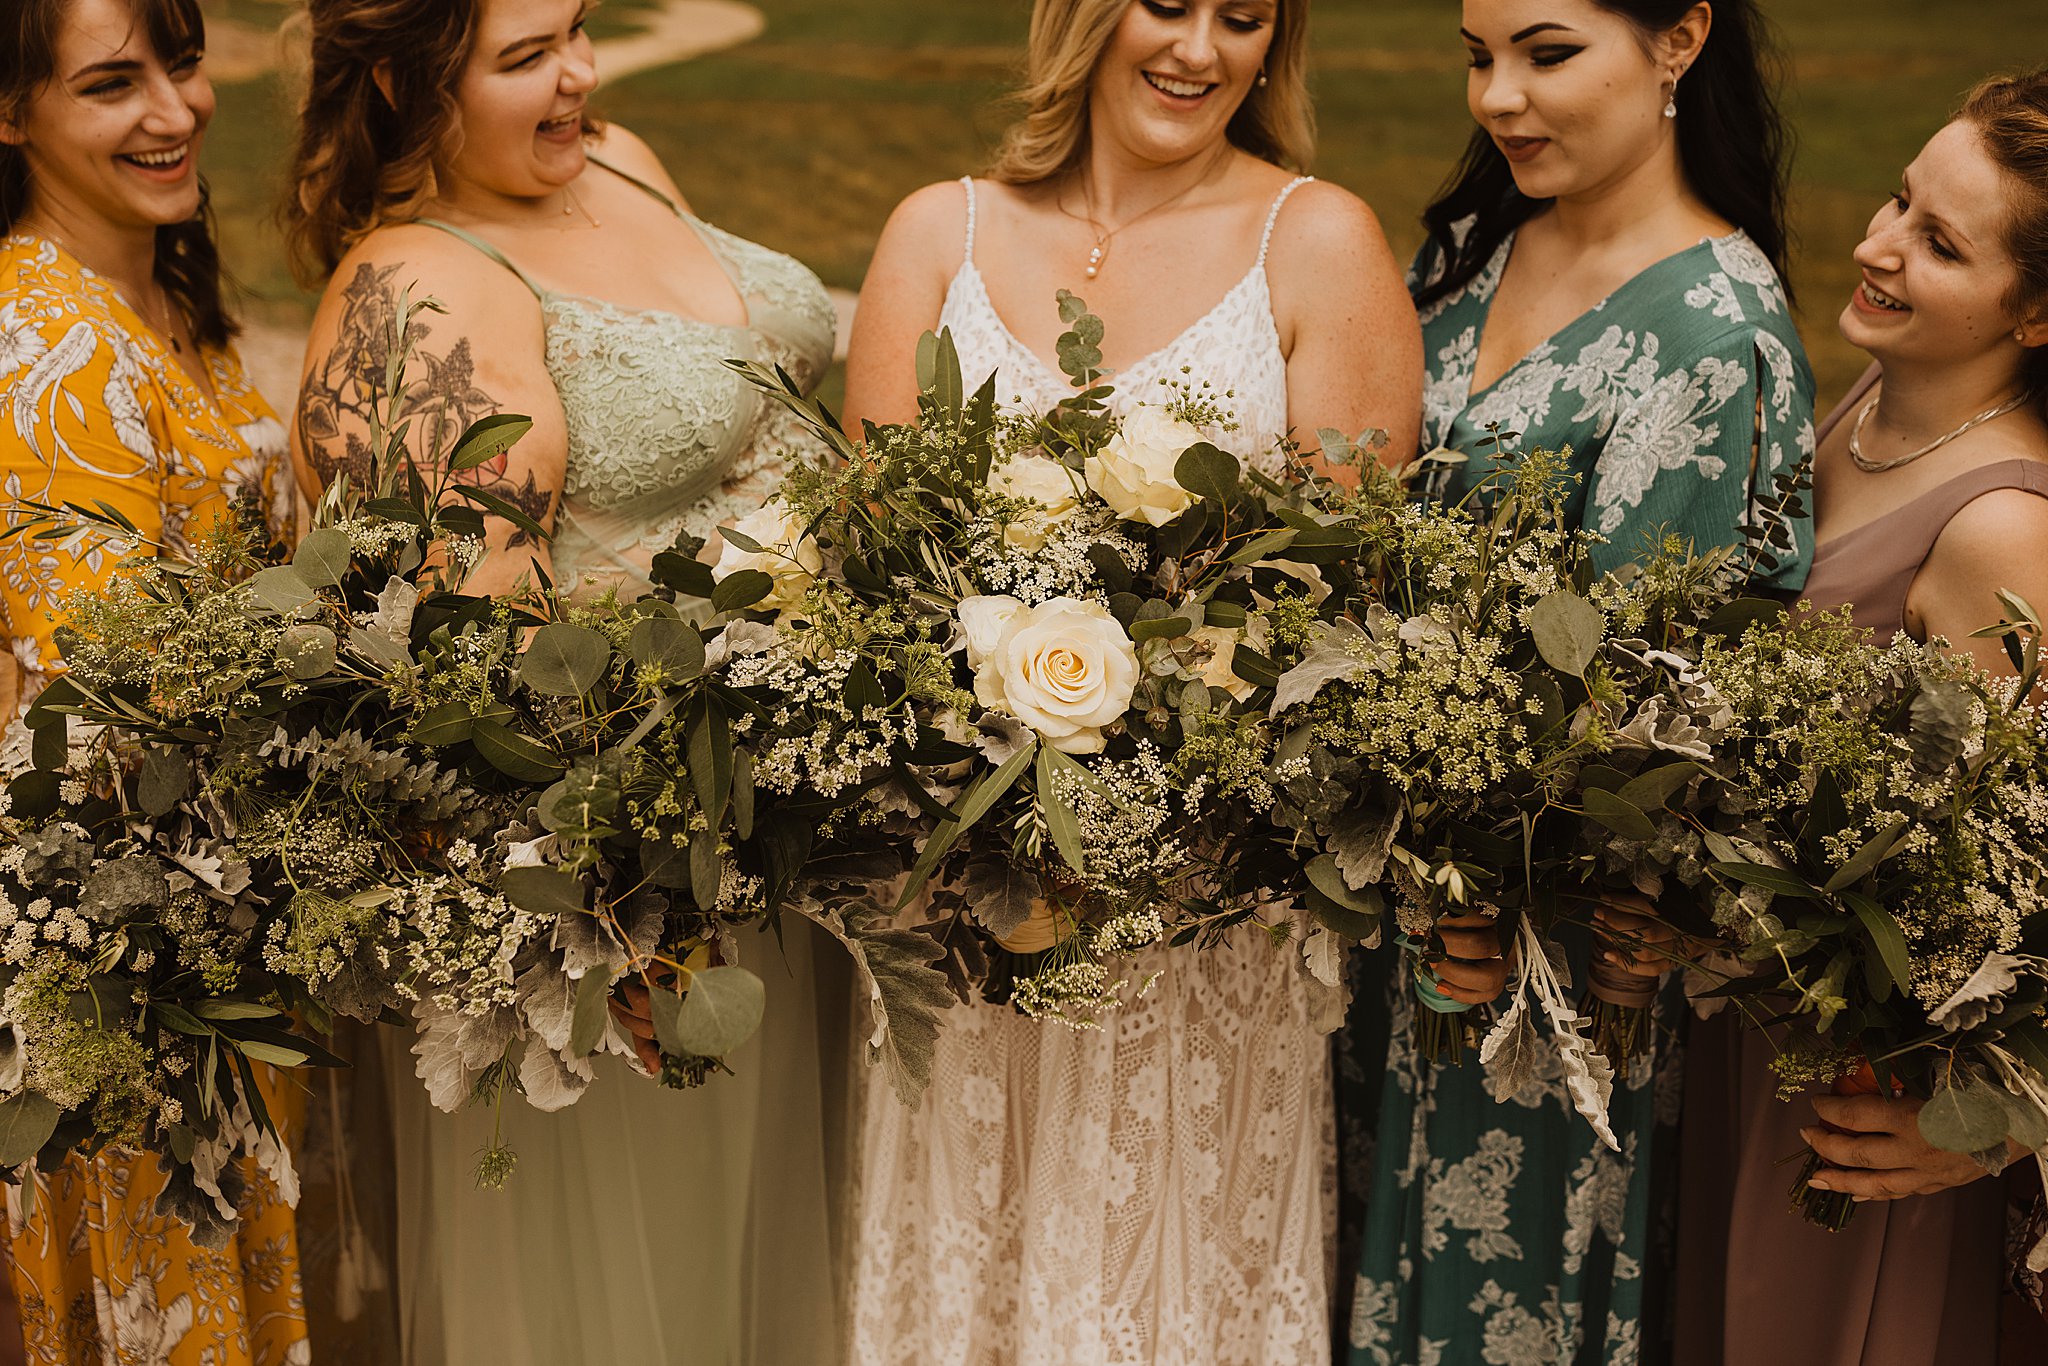 Mismatched Bridesmaids Dresses | Alton, IL Wedding Photos